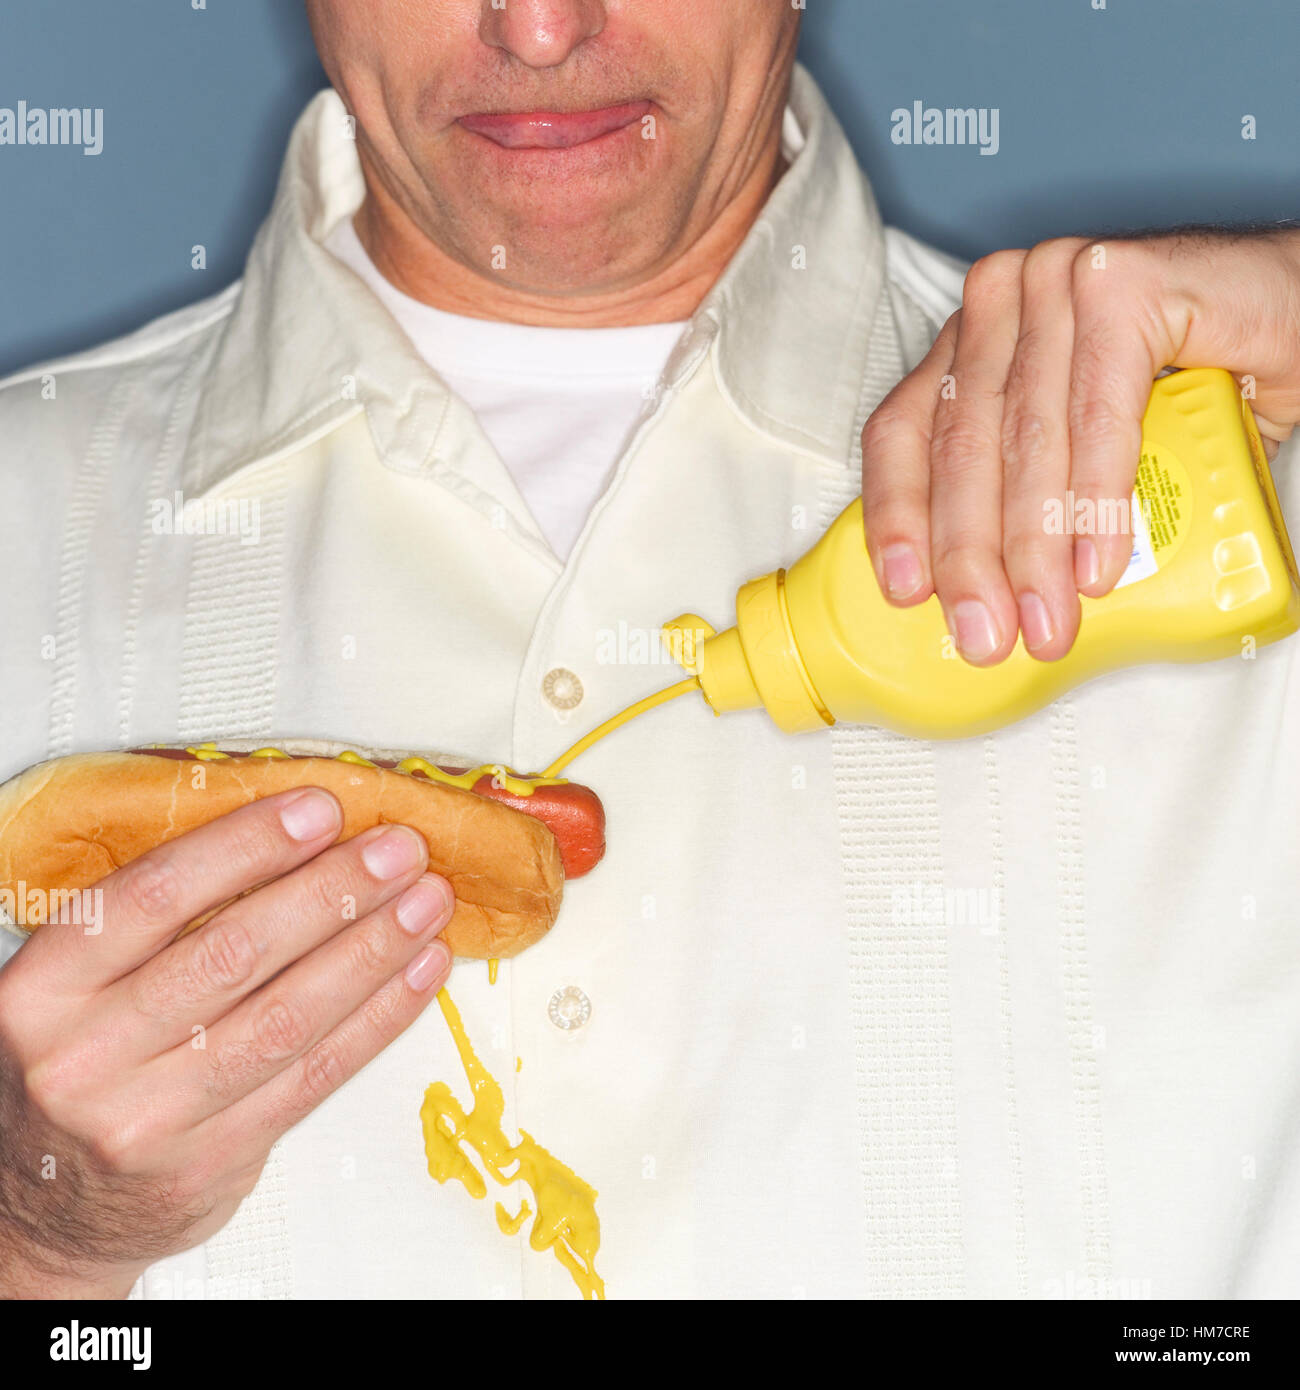 Uomo maturo holding hotdog e fuoriuscita accidentalmente la senape sulla camicia Foto Stock